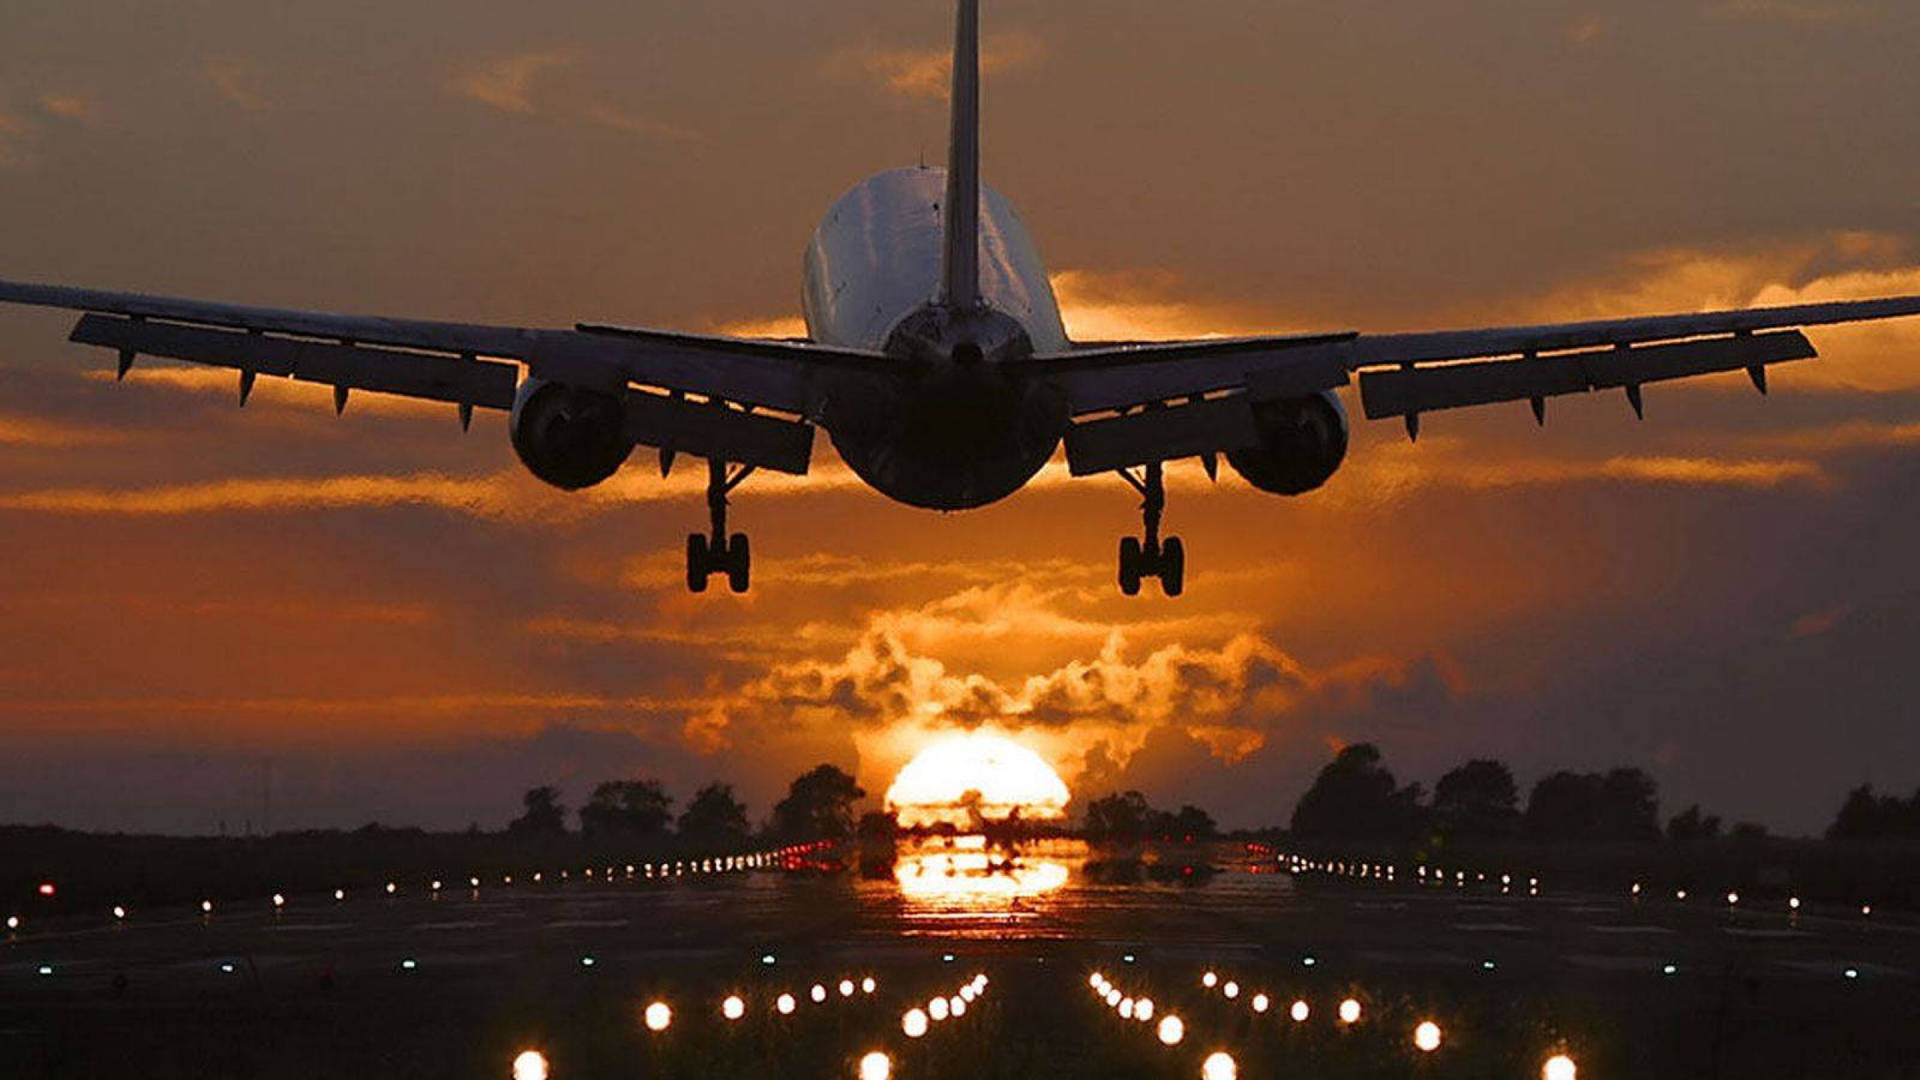 4k Plane Sunset Takeoff Wallpaper